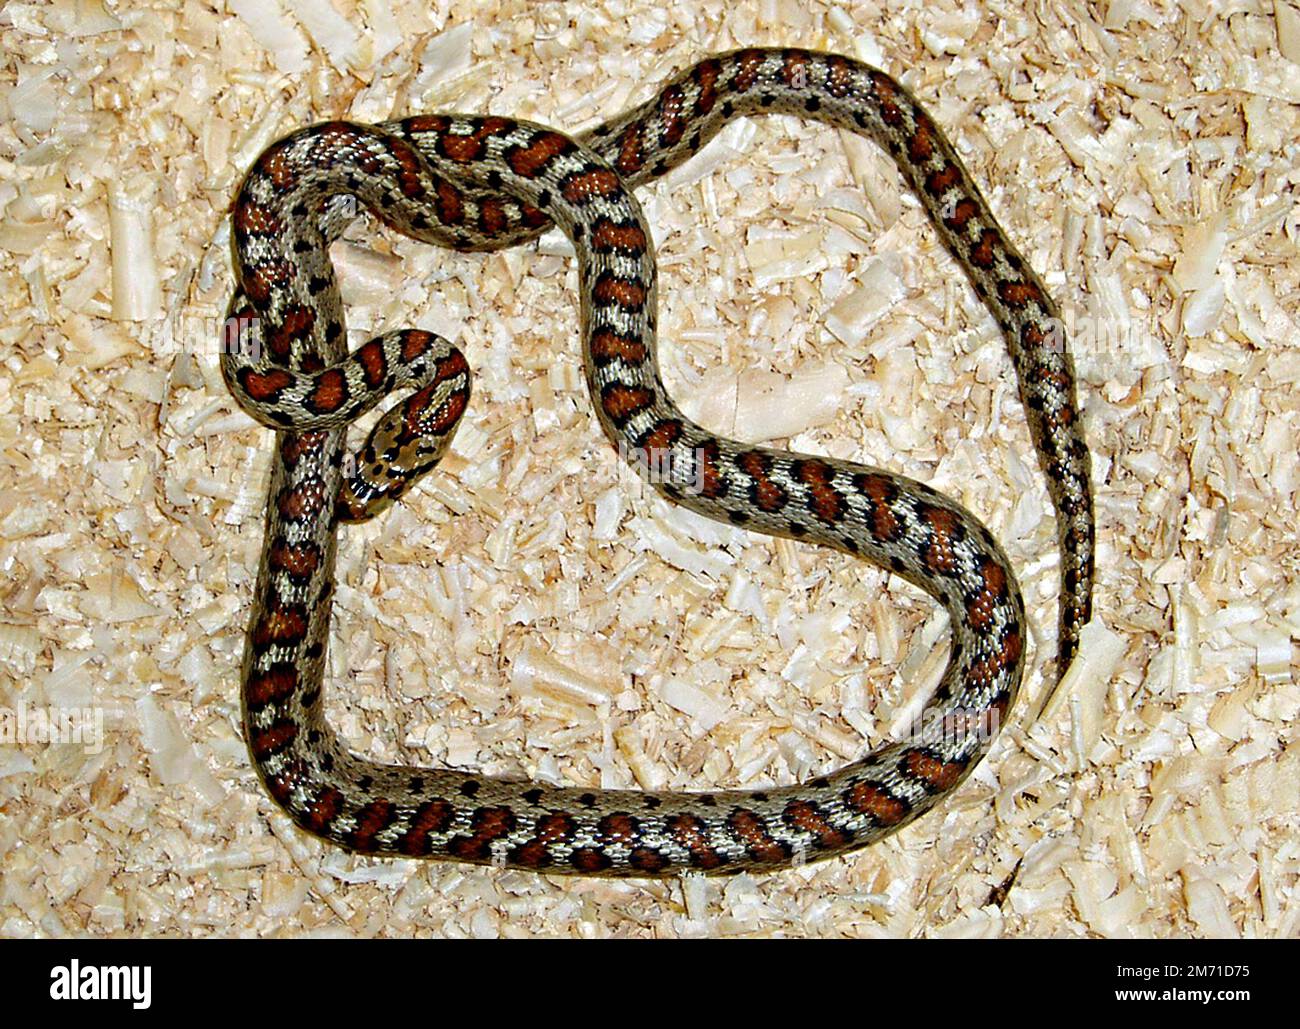 Leopard snake (Zamenis situla) Stock Photo